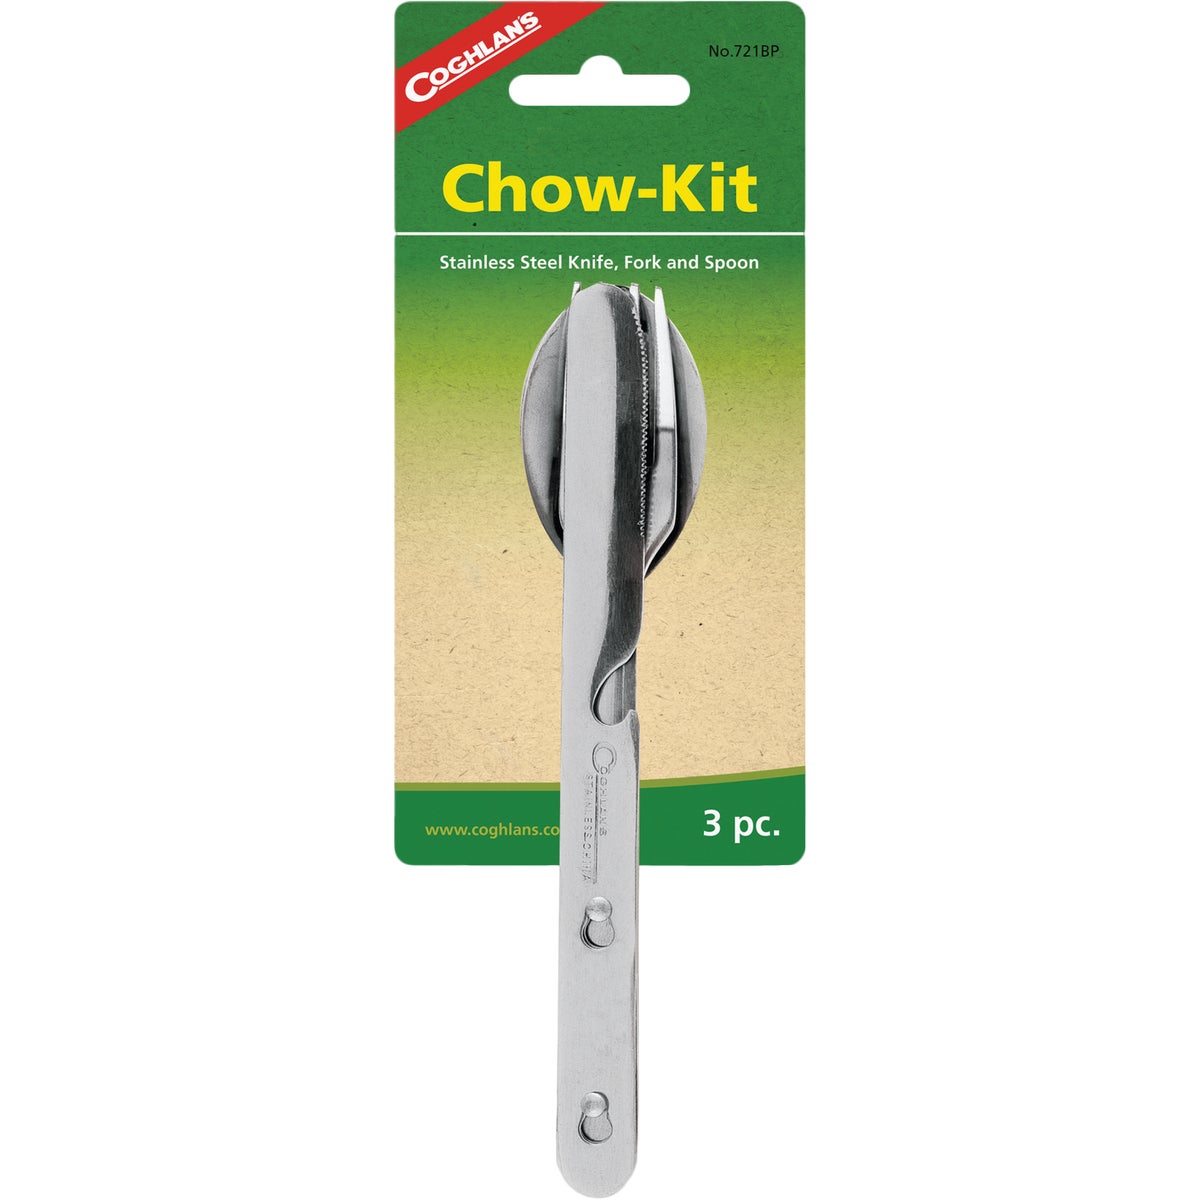 Item 840344, 3-piece stainless utensil kit.